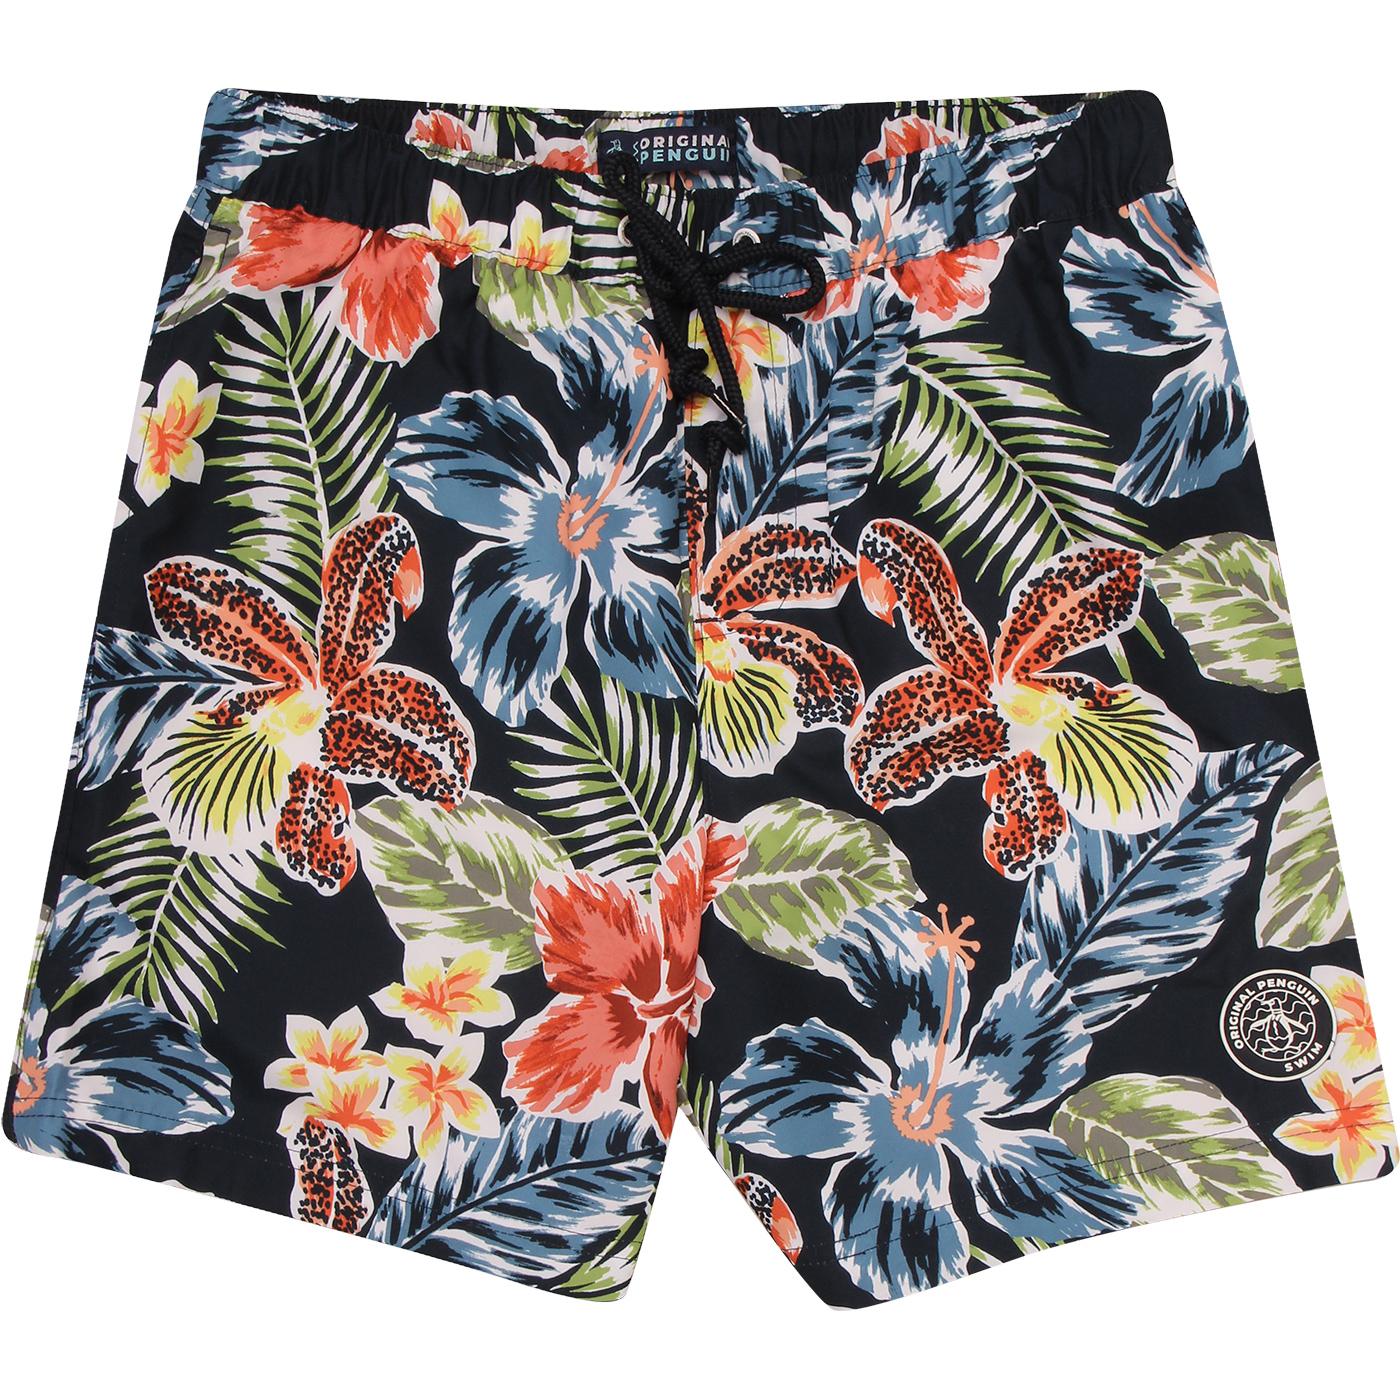 ORIGINAL PENGUIN Retro 70s Big Floral Swim Shorts